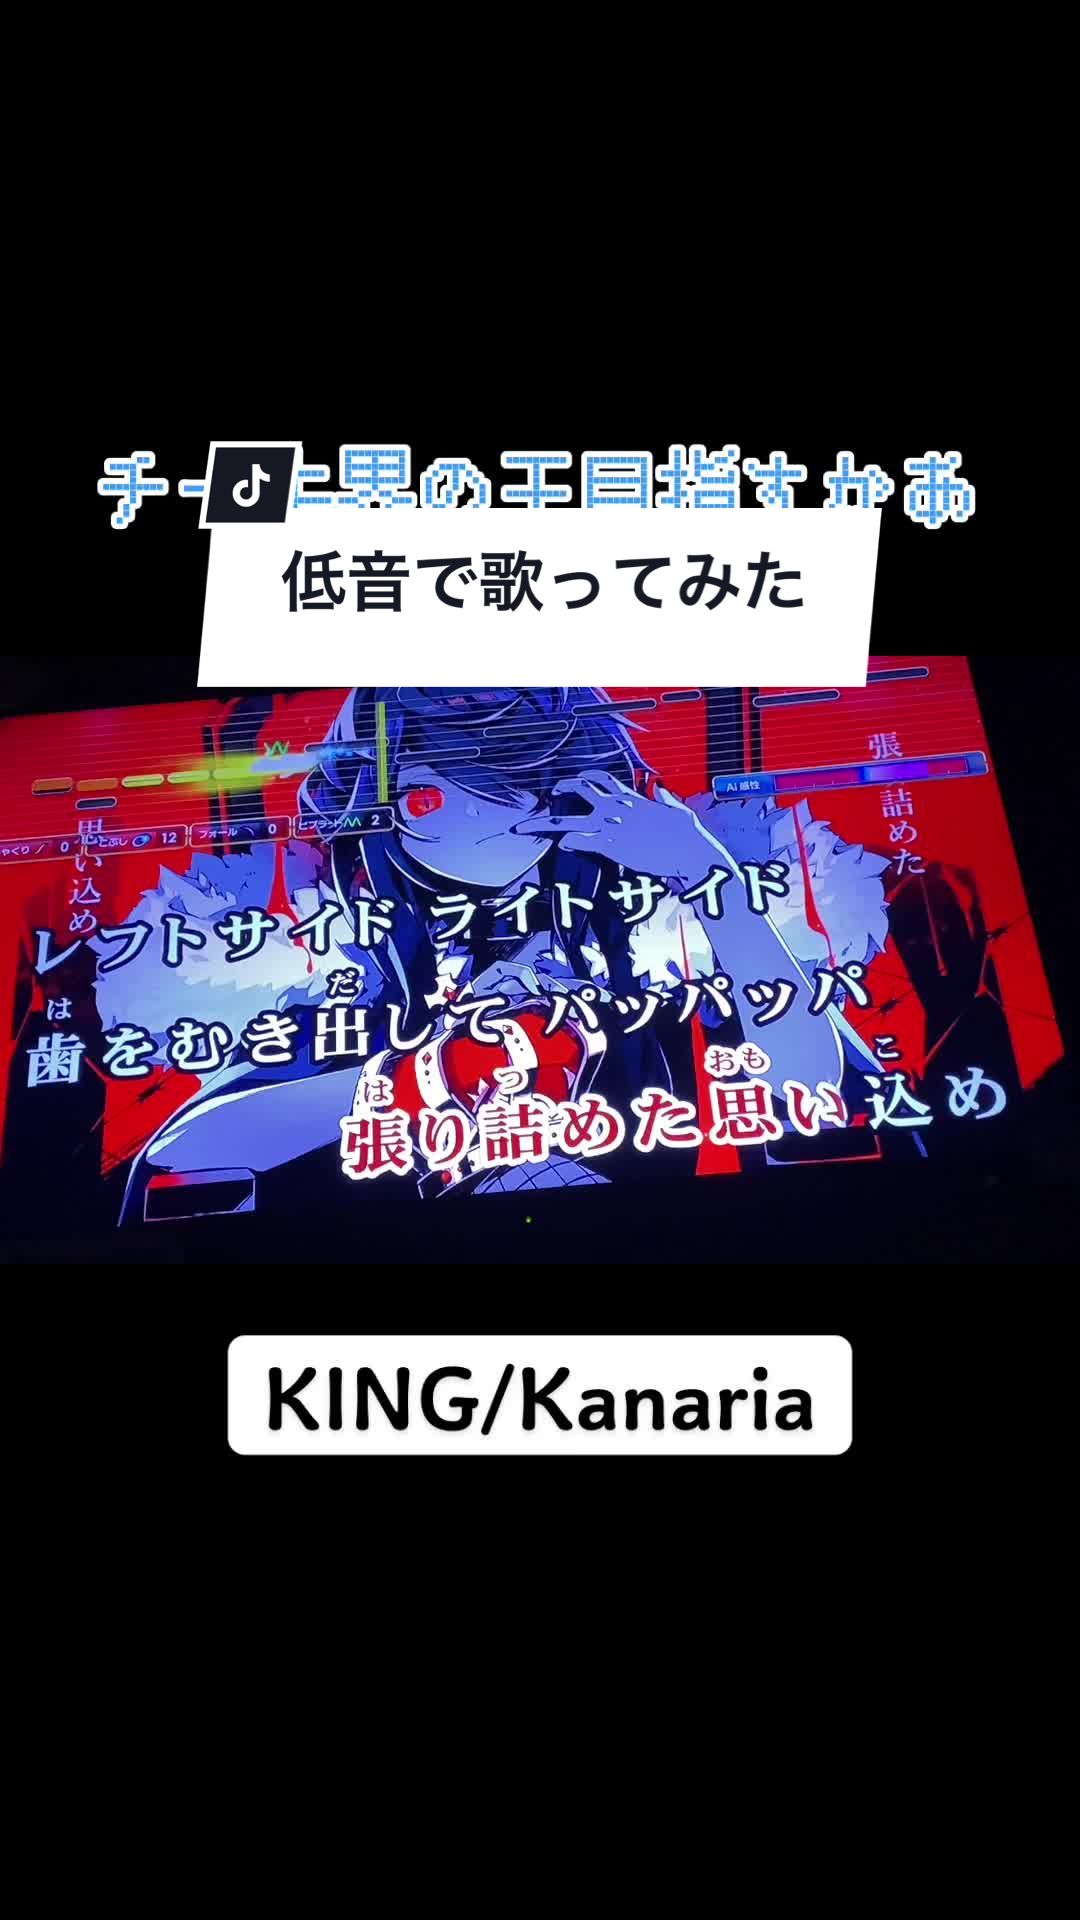 king简谱kanaria图片